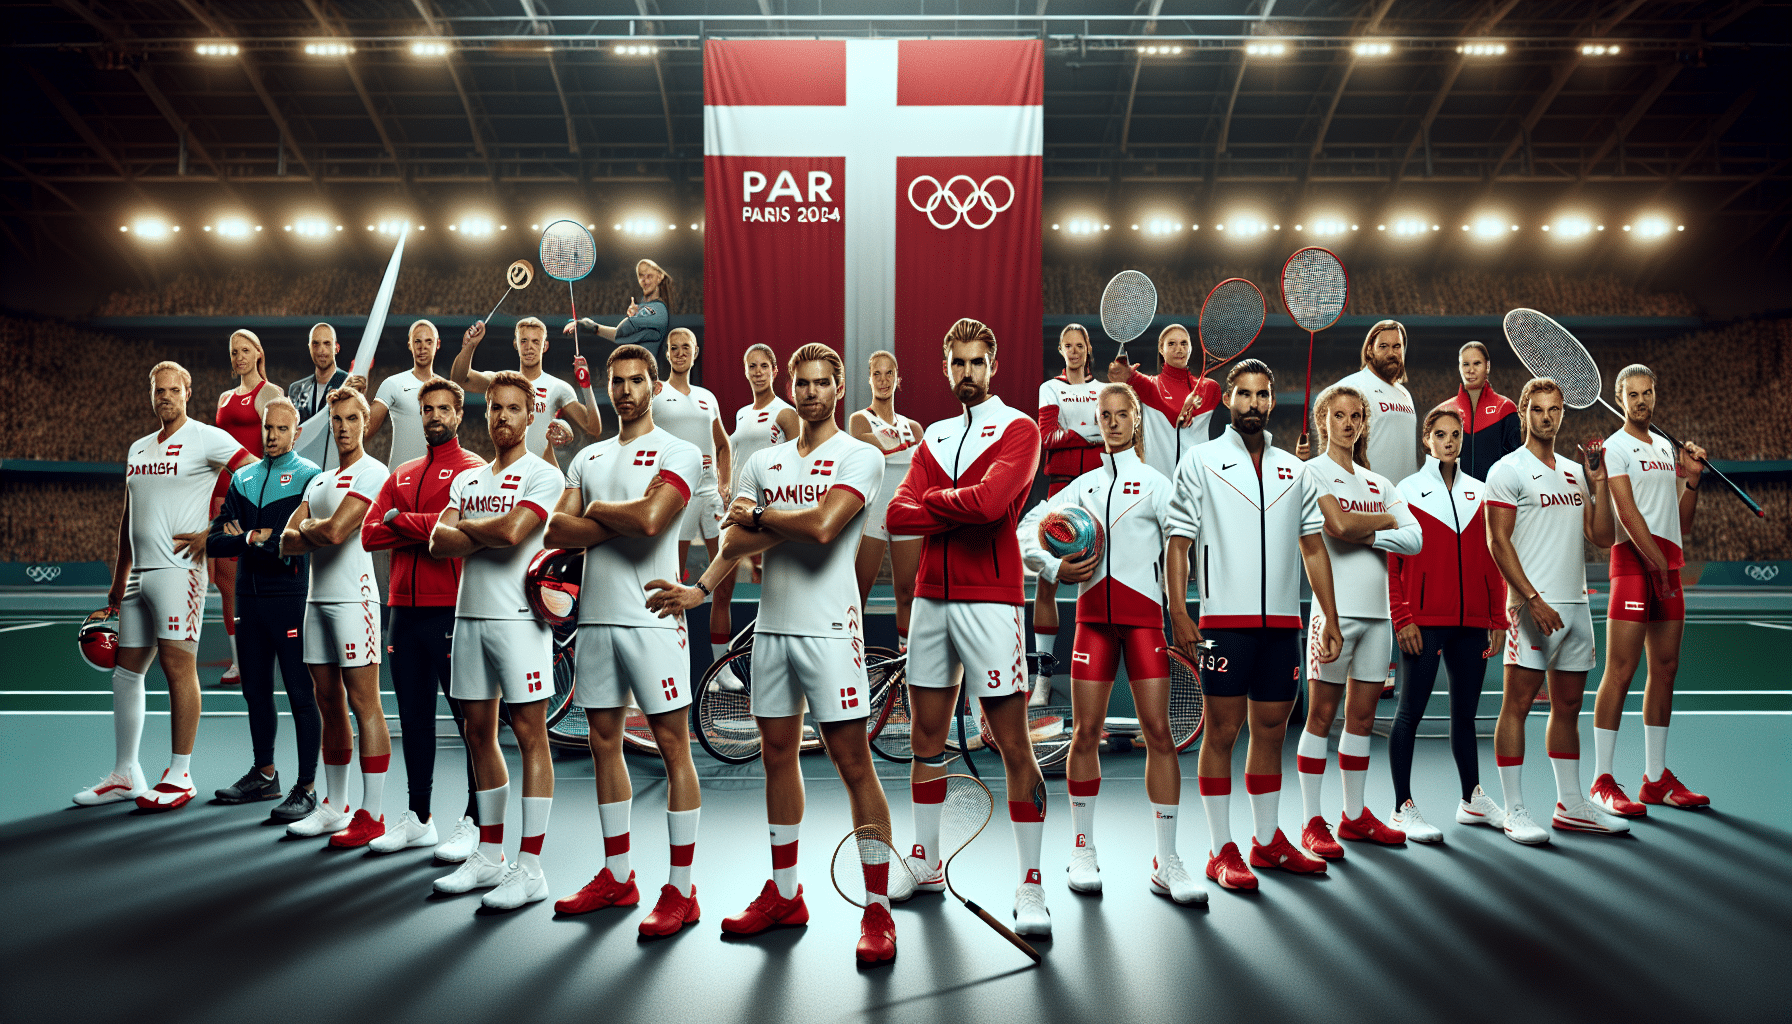 Dänisches Olympiateam startklar für Paris: Stilvolle Ausrüstung und hohe Medaillenhoffnungen